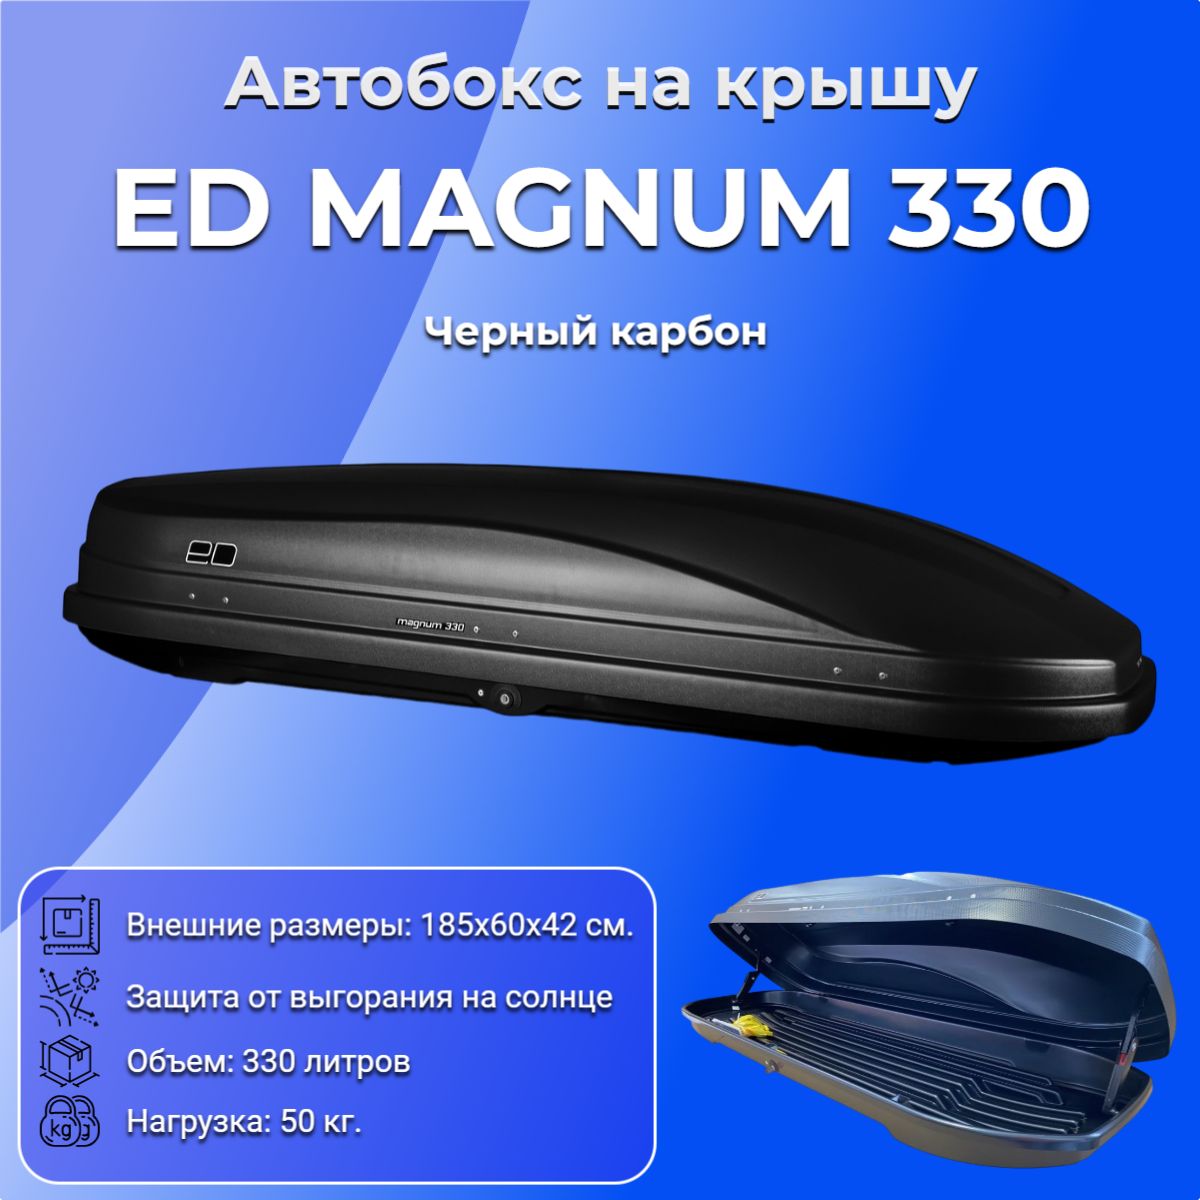 АвтобокснакрышуавтомобиляEDМагнум(EDMagnum)330,черныйкарбон,330литров,1850х600х420,ED5-065B